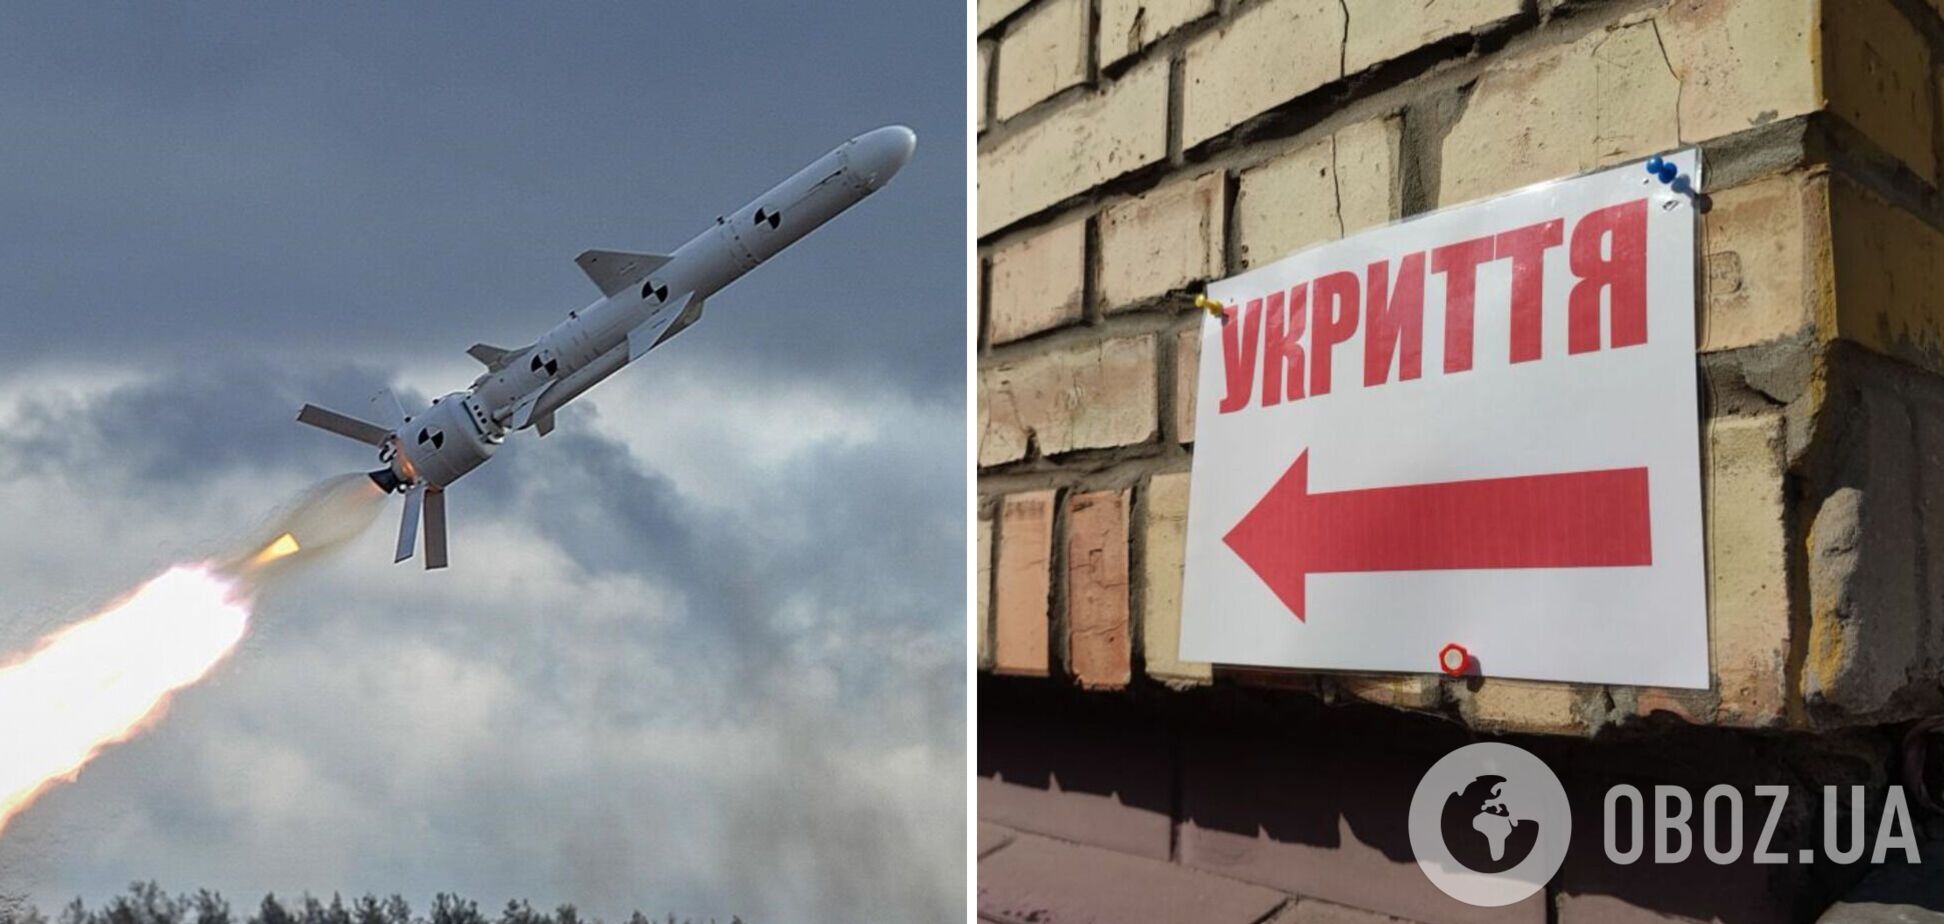 По всей территории Украины воздушная тревога: впервые за долгое время РФ запустила ракеты с моря